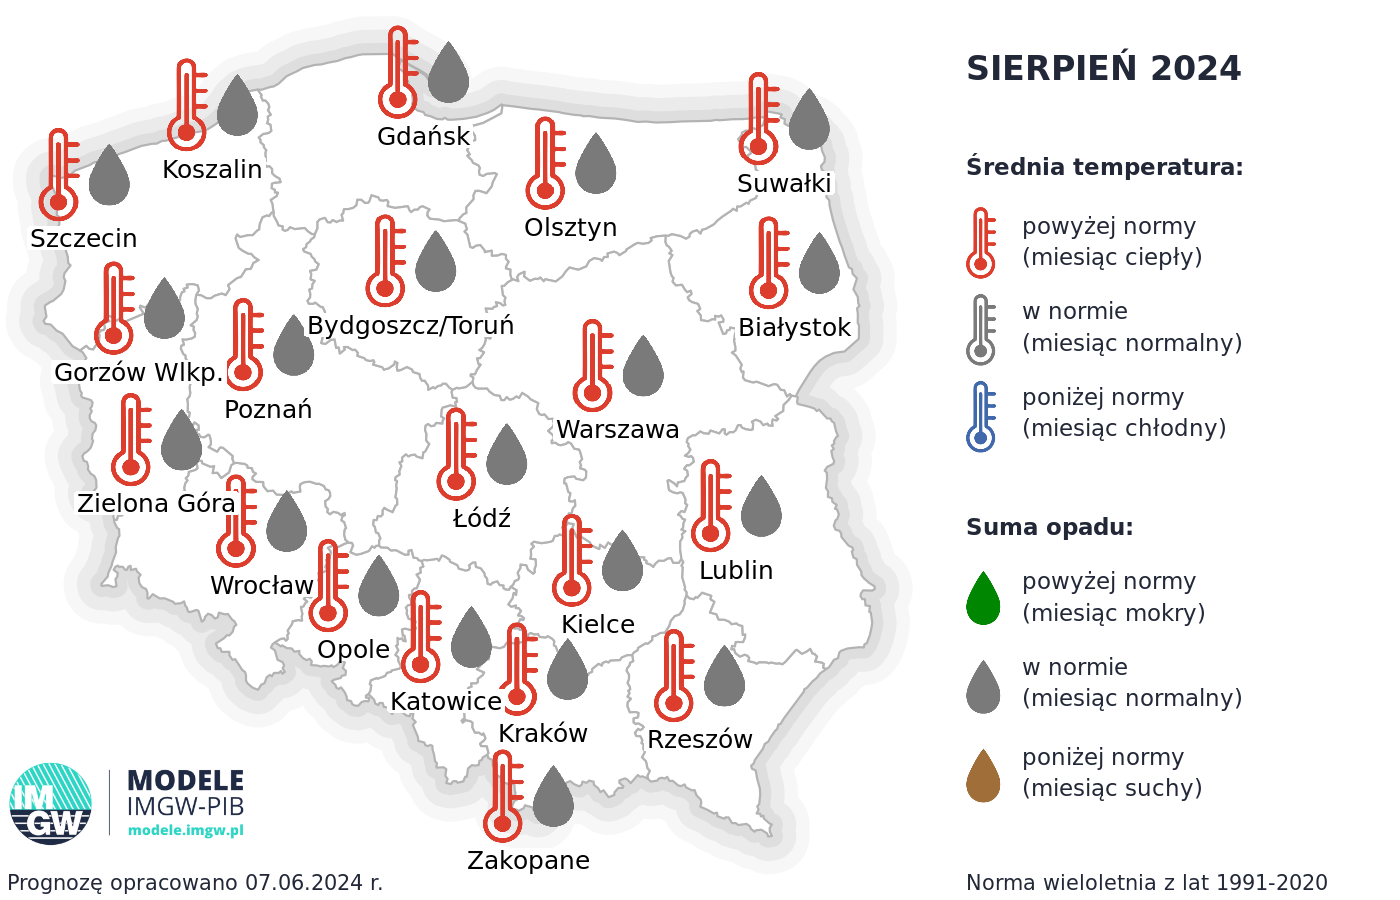 Rys.2. Prognoza średniej miesięcznej temperatury powietrza i miesięcznej sumy opadów atmosferycznych na sierpień 2024 r. dla wybranych miast w Polsce